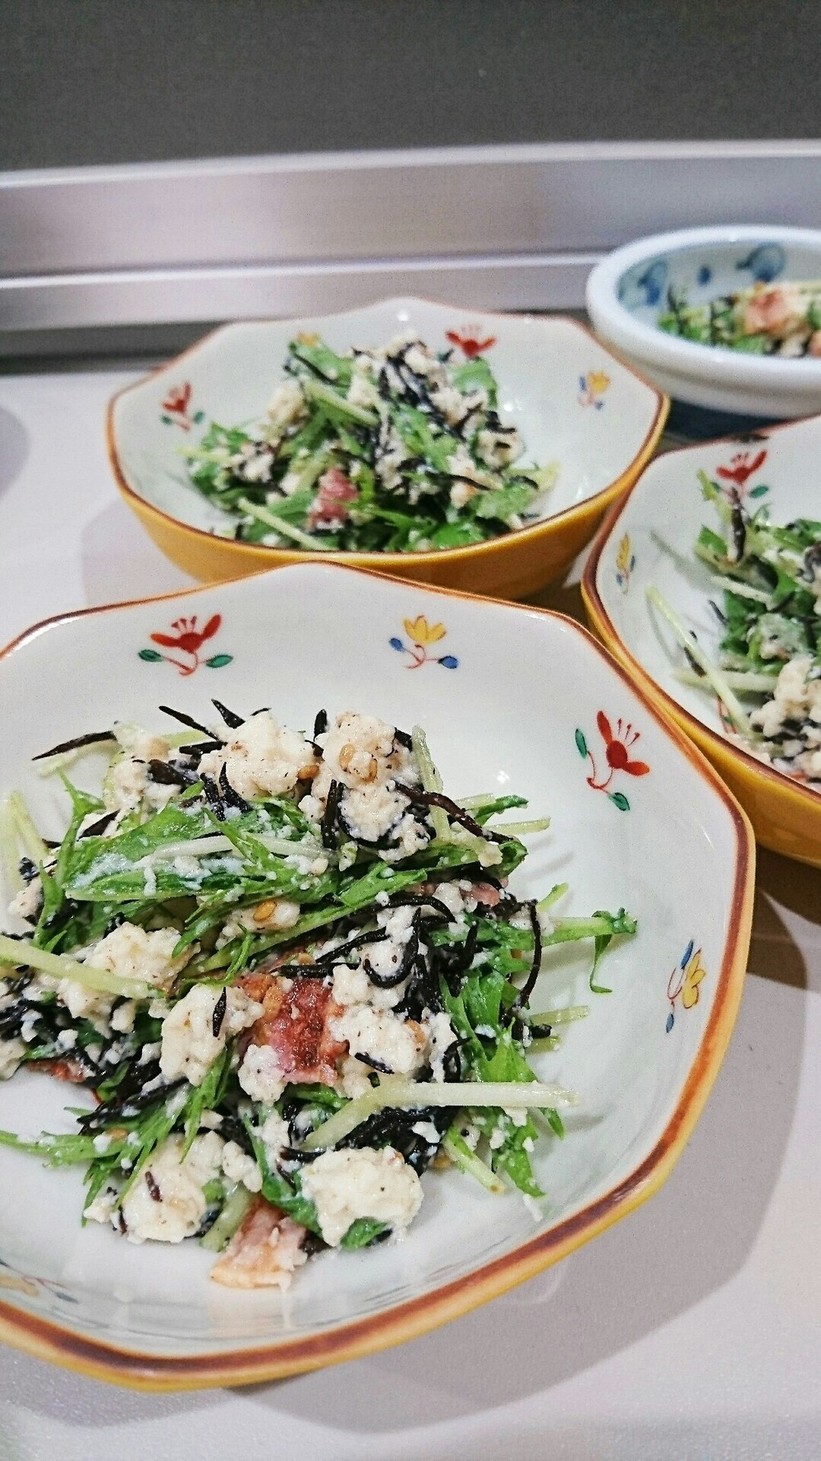 ひじきの白和えサラダ・ベーコン&水菜の画像